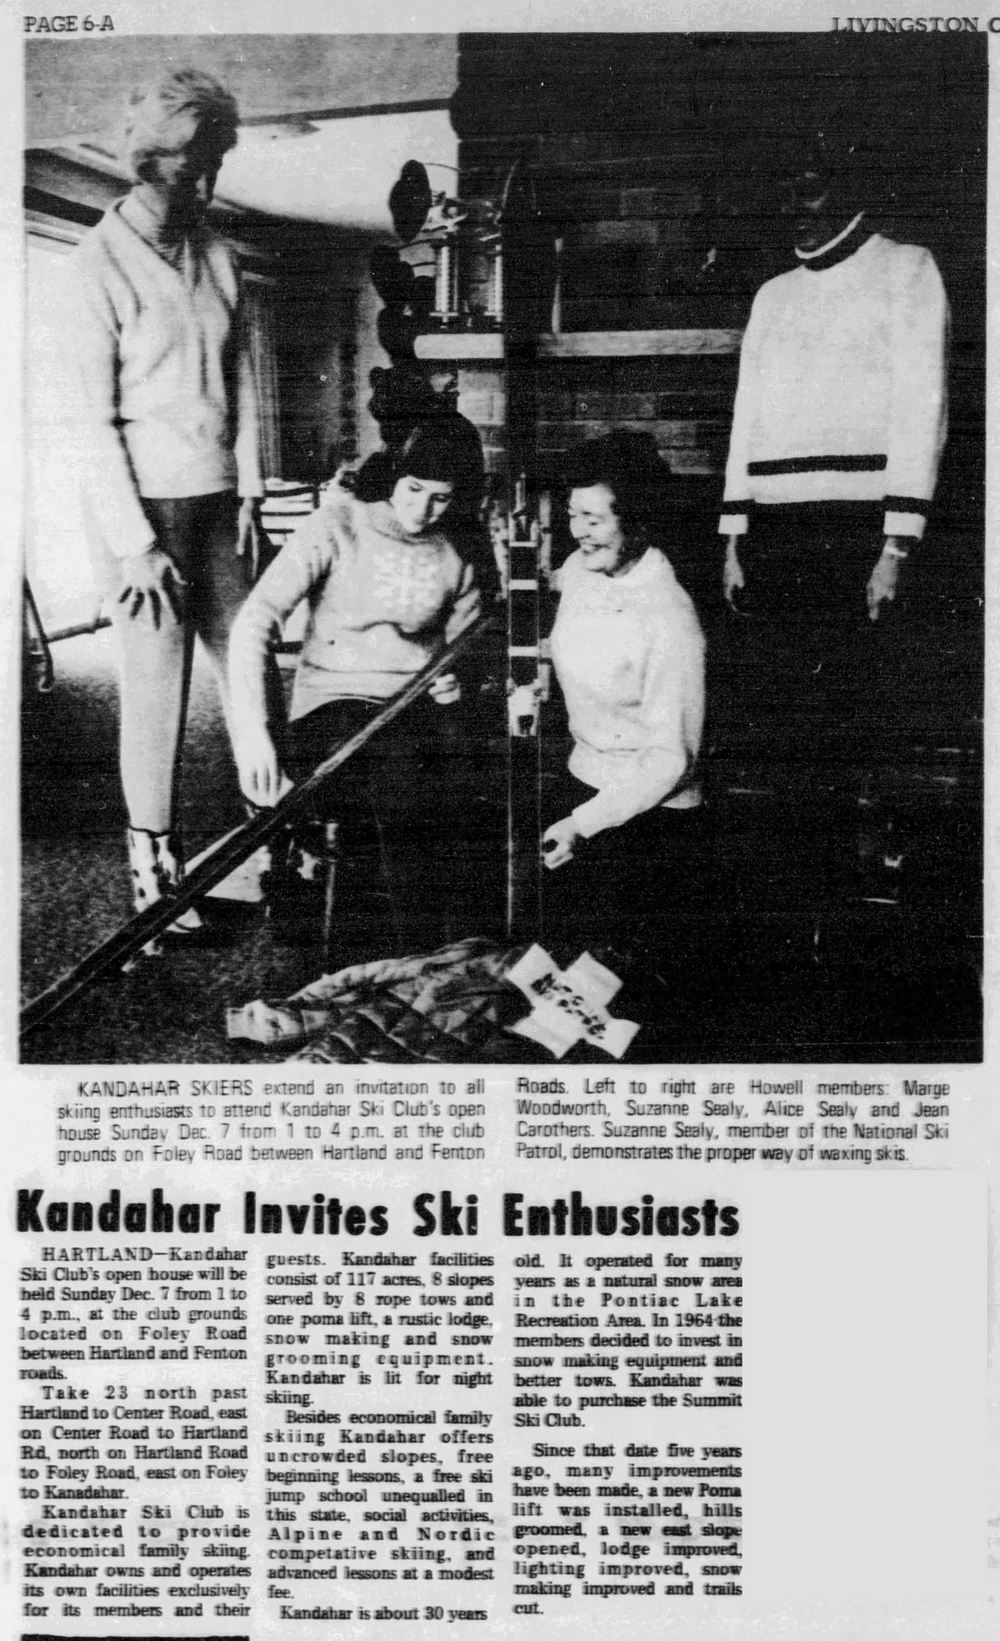 Kandahar Ski Club (Summit Ski Club) - Dec 3 1969 Article